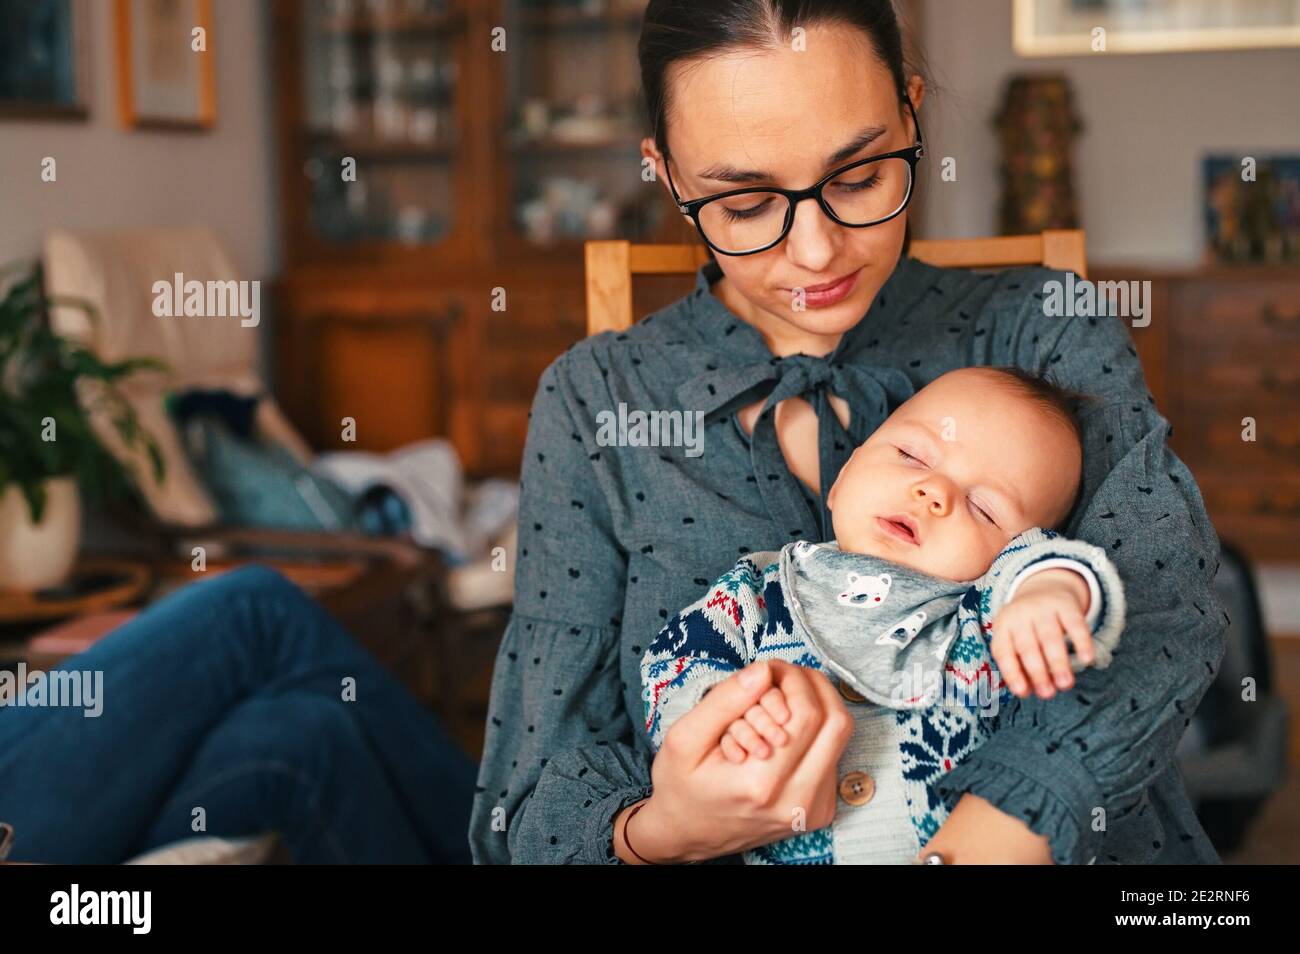 Jeune mère assise dans la salle de séjour et tenant bébé nouveau-né Banque D'Images